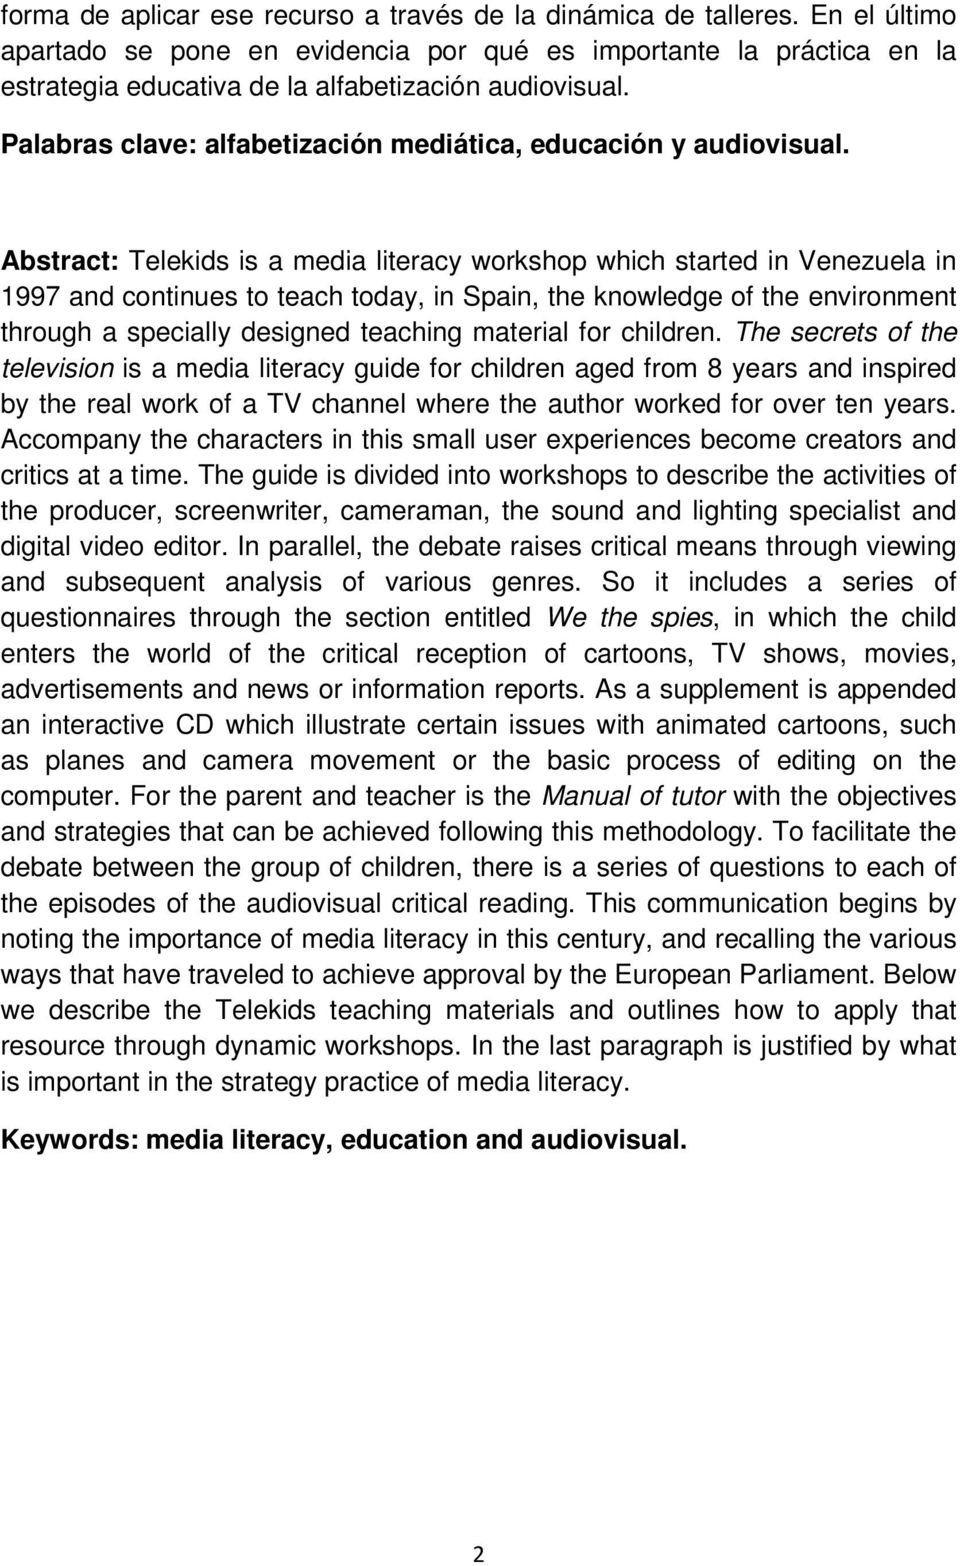 Palabras clave: alfabetización mediática, educación y audiovisual.